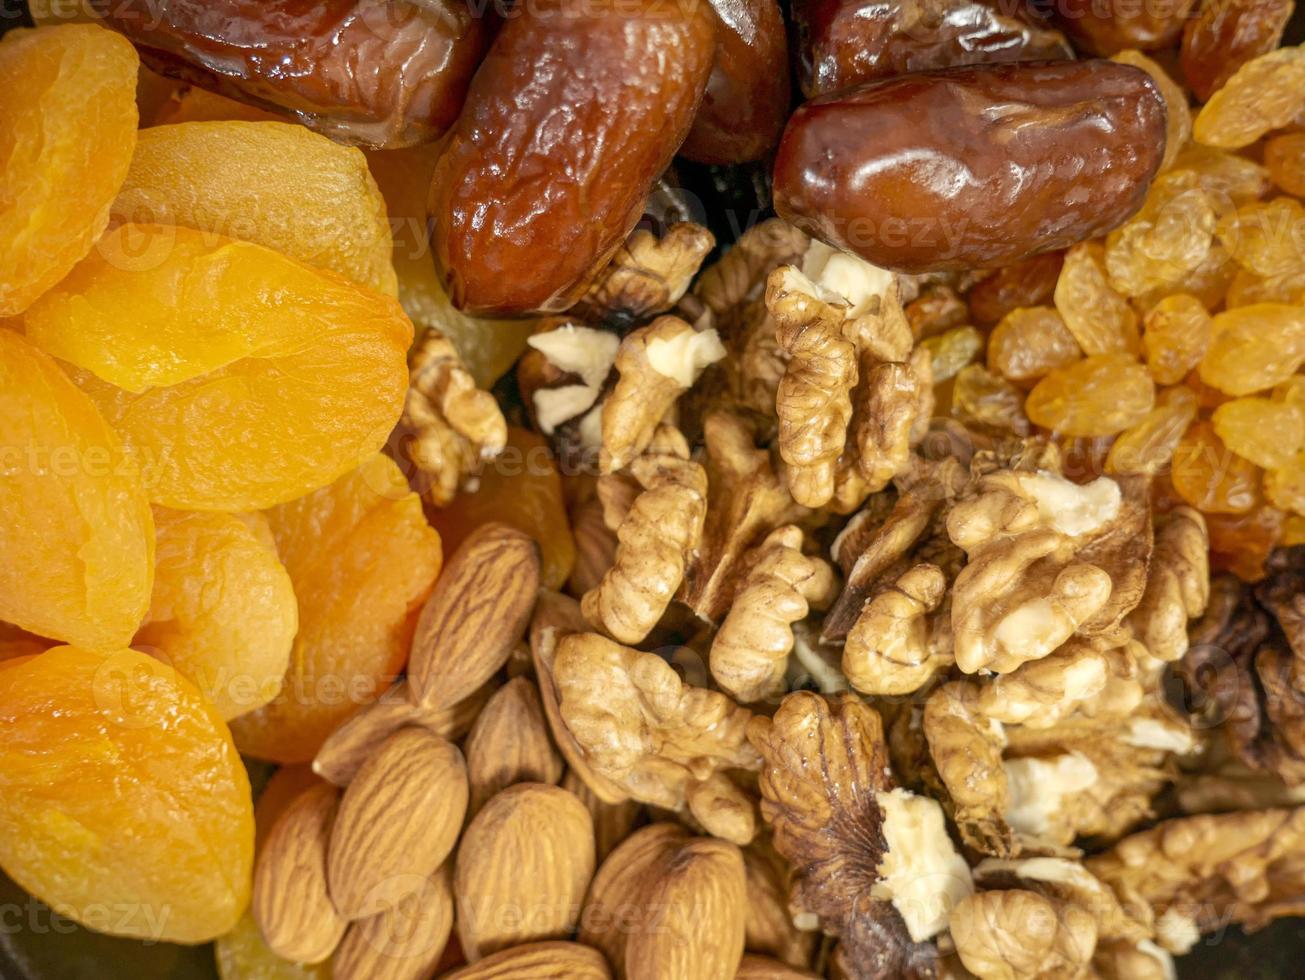 noix et fruits secs. noix, amandes, abricots secs, raisins secs et dattes. des aliments sains et des collations. bonbons orientaux photo